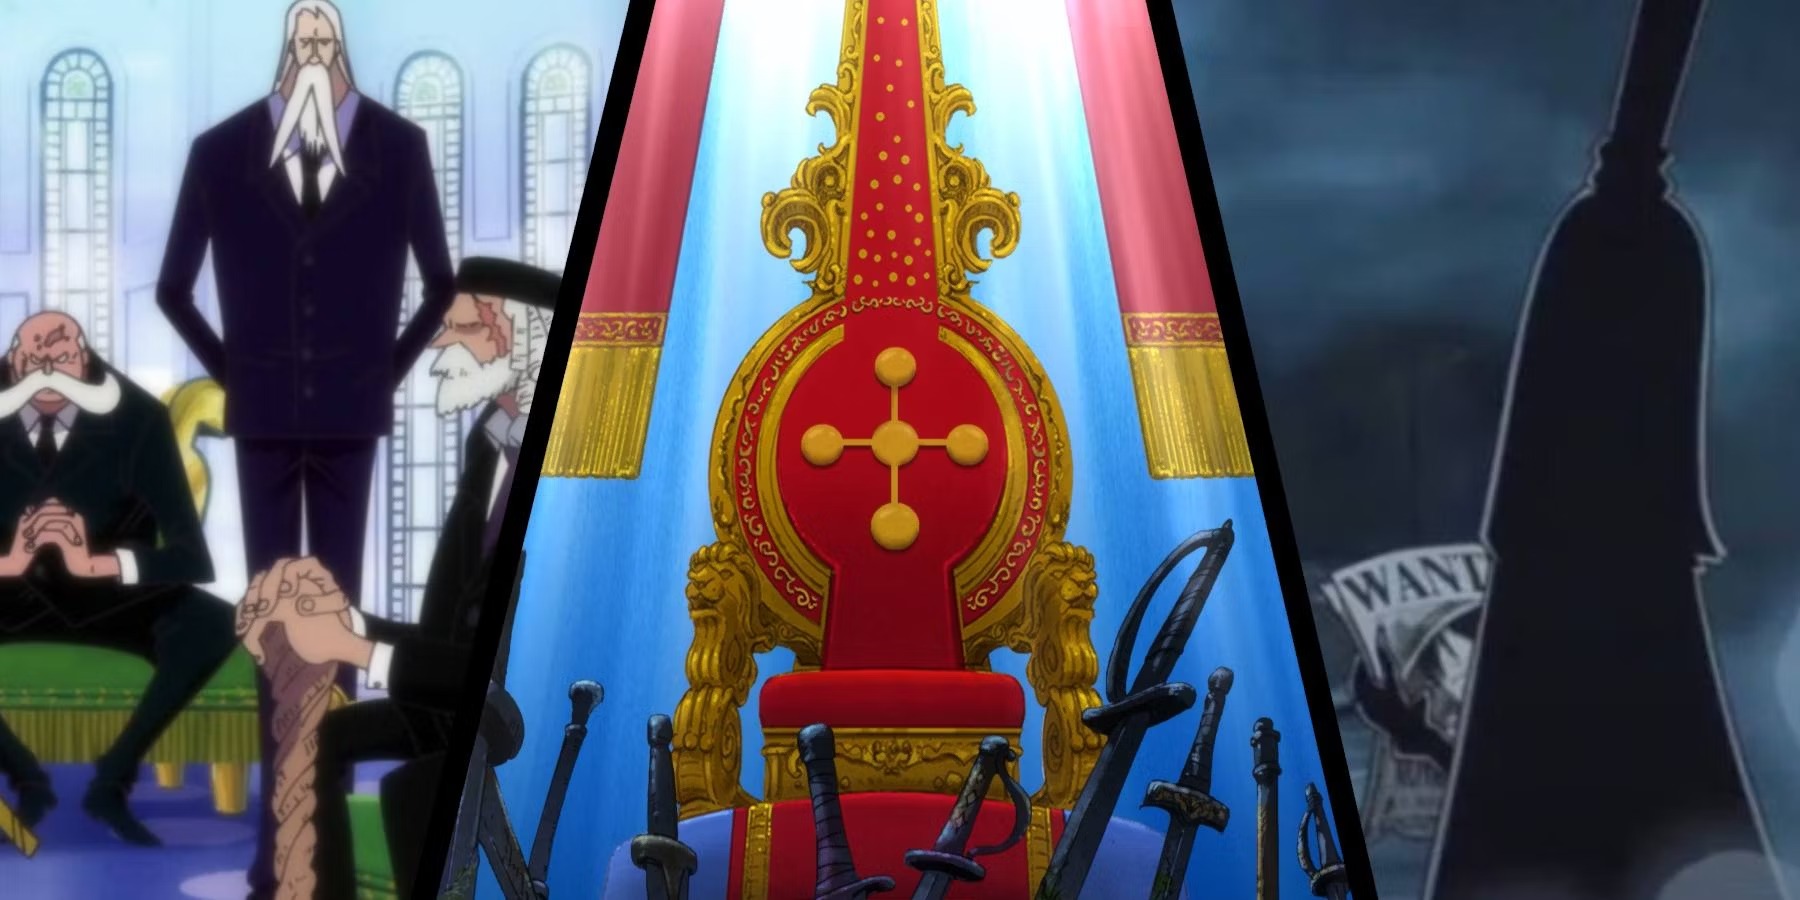 Guia de One Piece: Como funciona a hierarquia do Governo Mundial